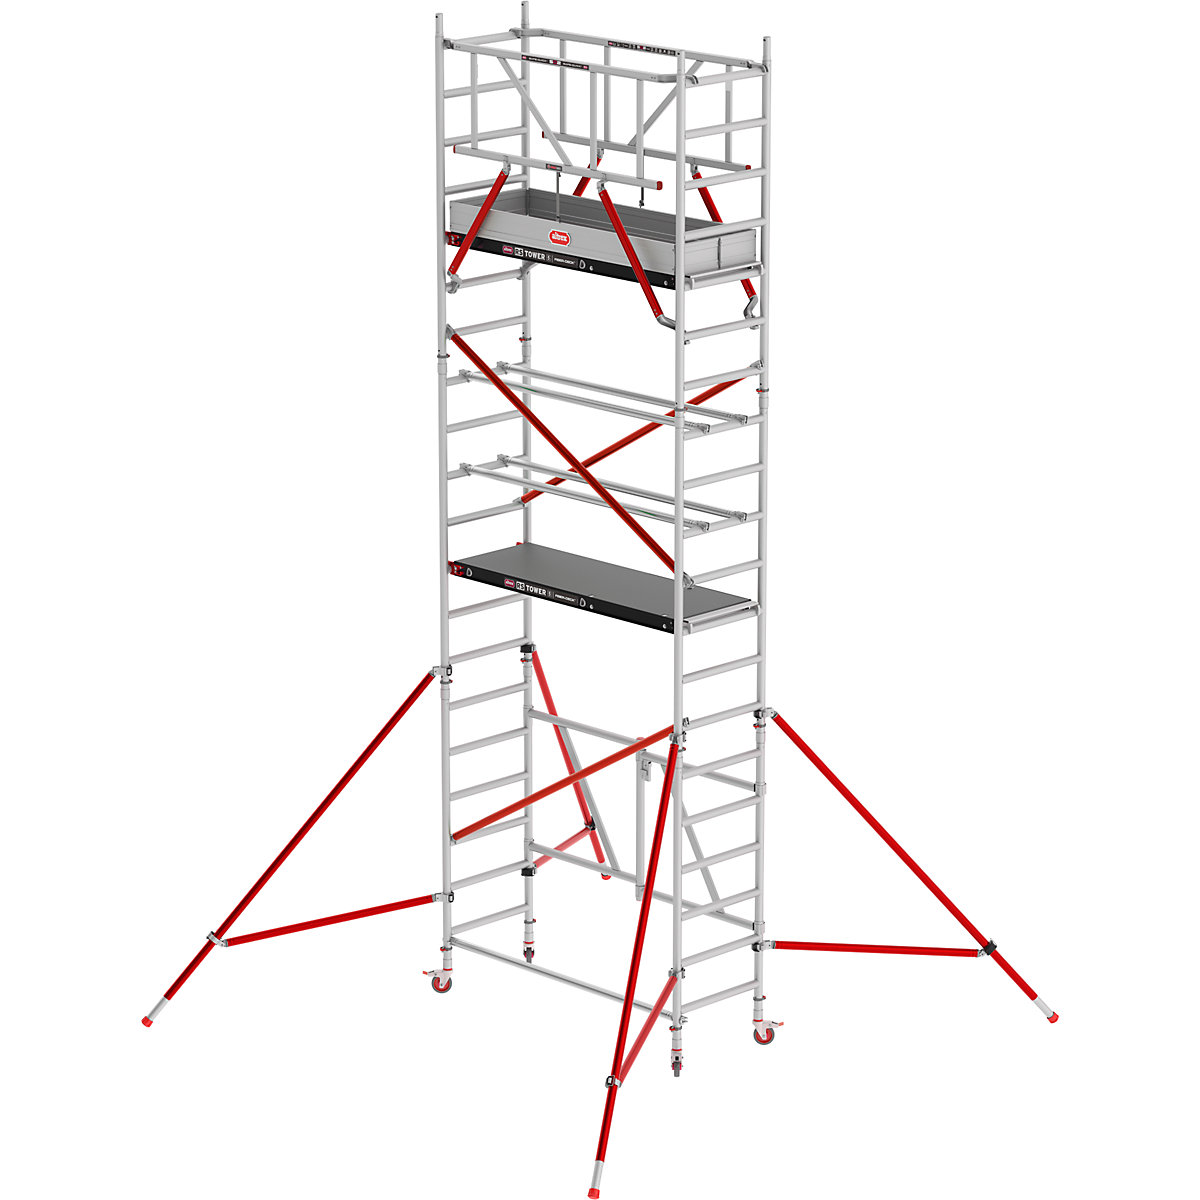 Notranji oder RS TOWER 54 – Altrex, ploščad Fiber-Deck®, delovna višina 6,80 m